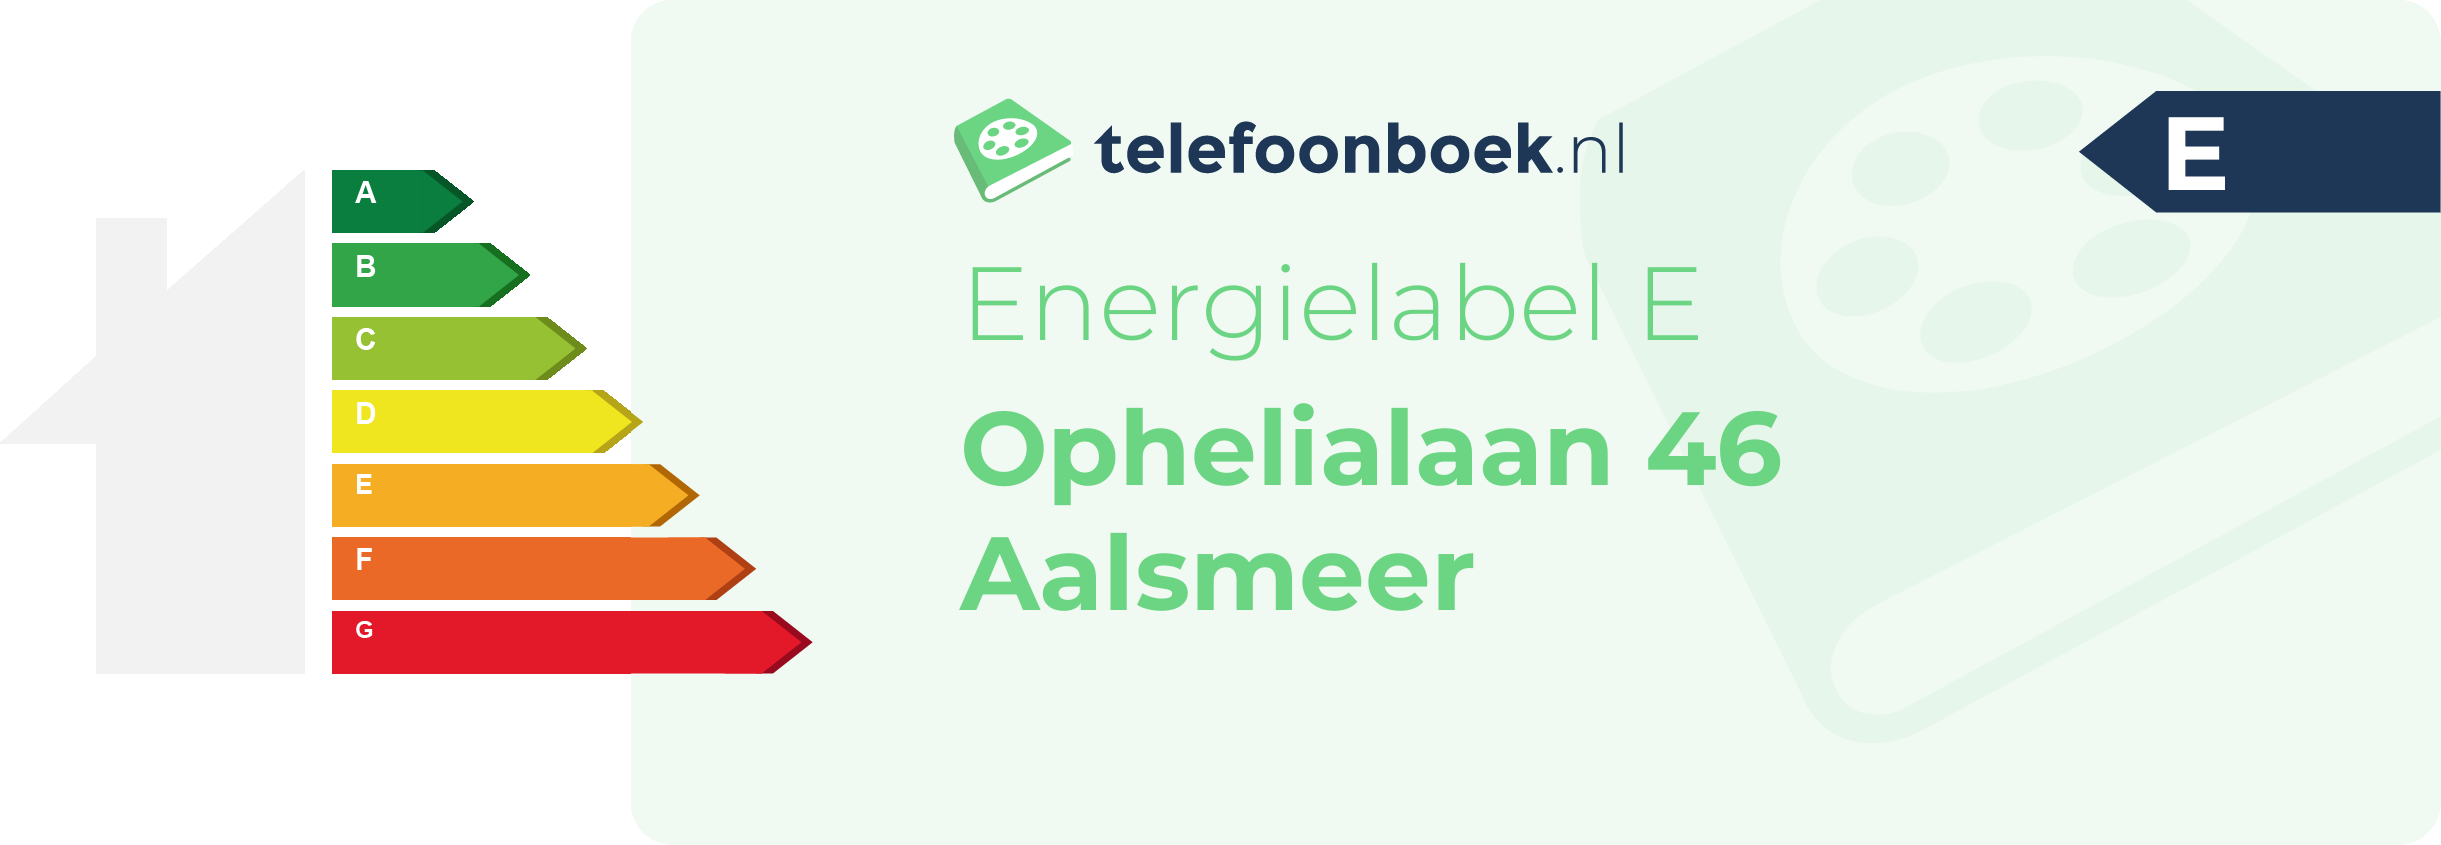 Energielabel Ophelialaan 46 Aalsmeer